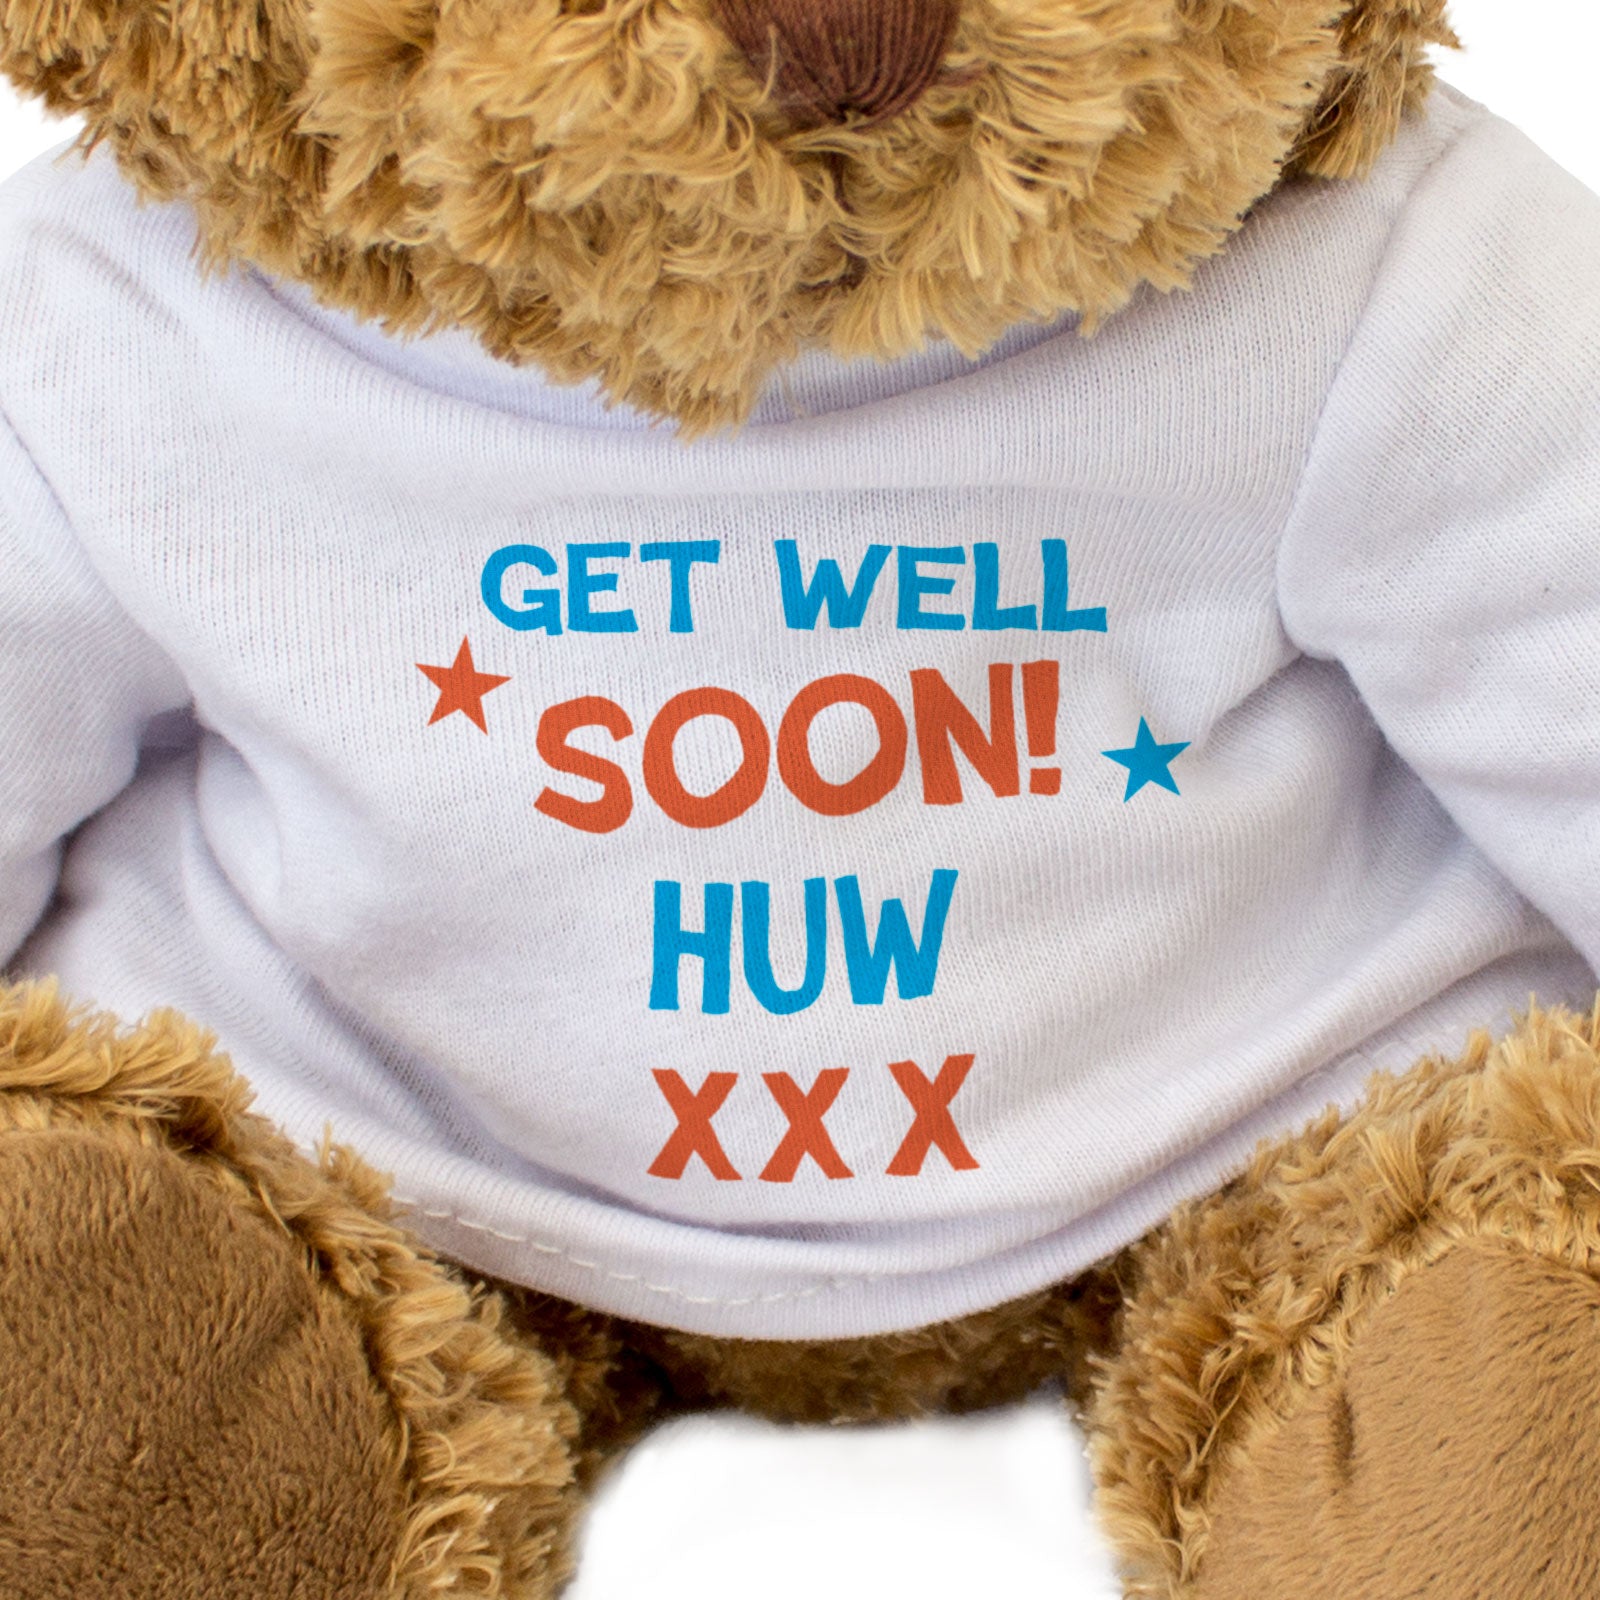 Get Well Soon Huw - Teddy Bear